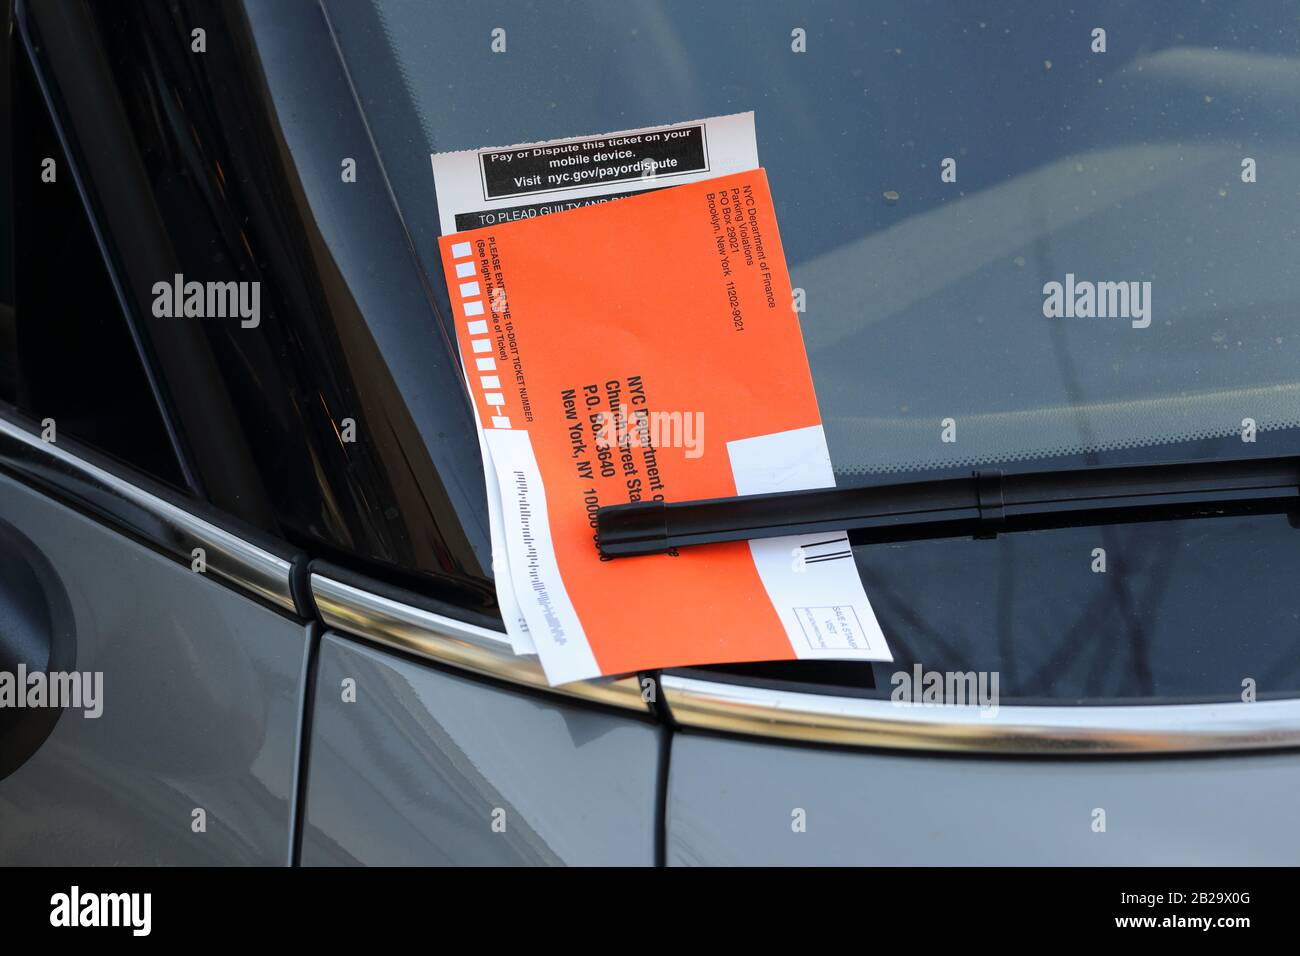 Ein NEW YORKER Strafzettel an der Windschutzscheibe eines Kraftfahrzeugs in New York, NY, USA Stockfoto